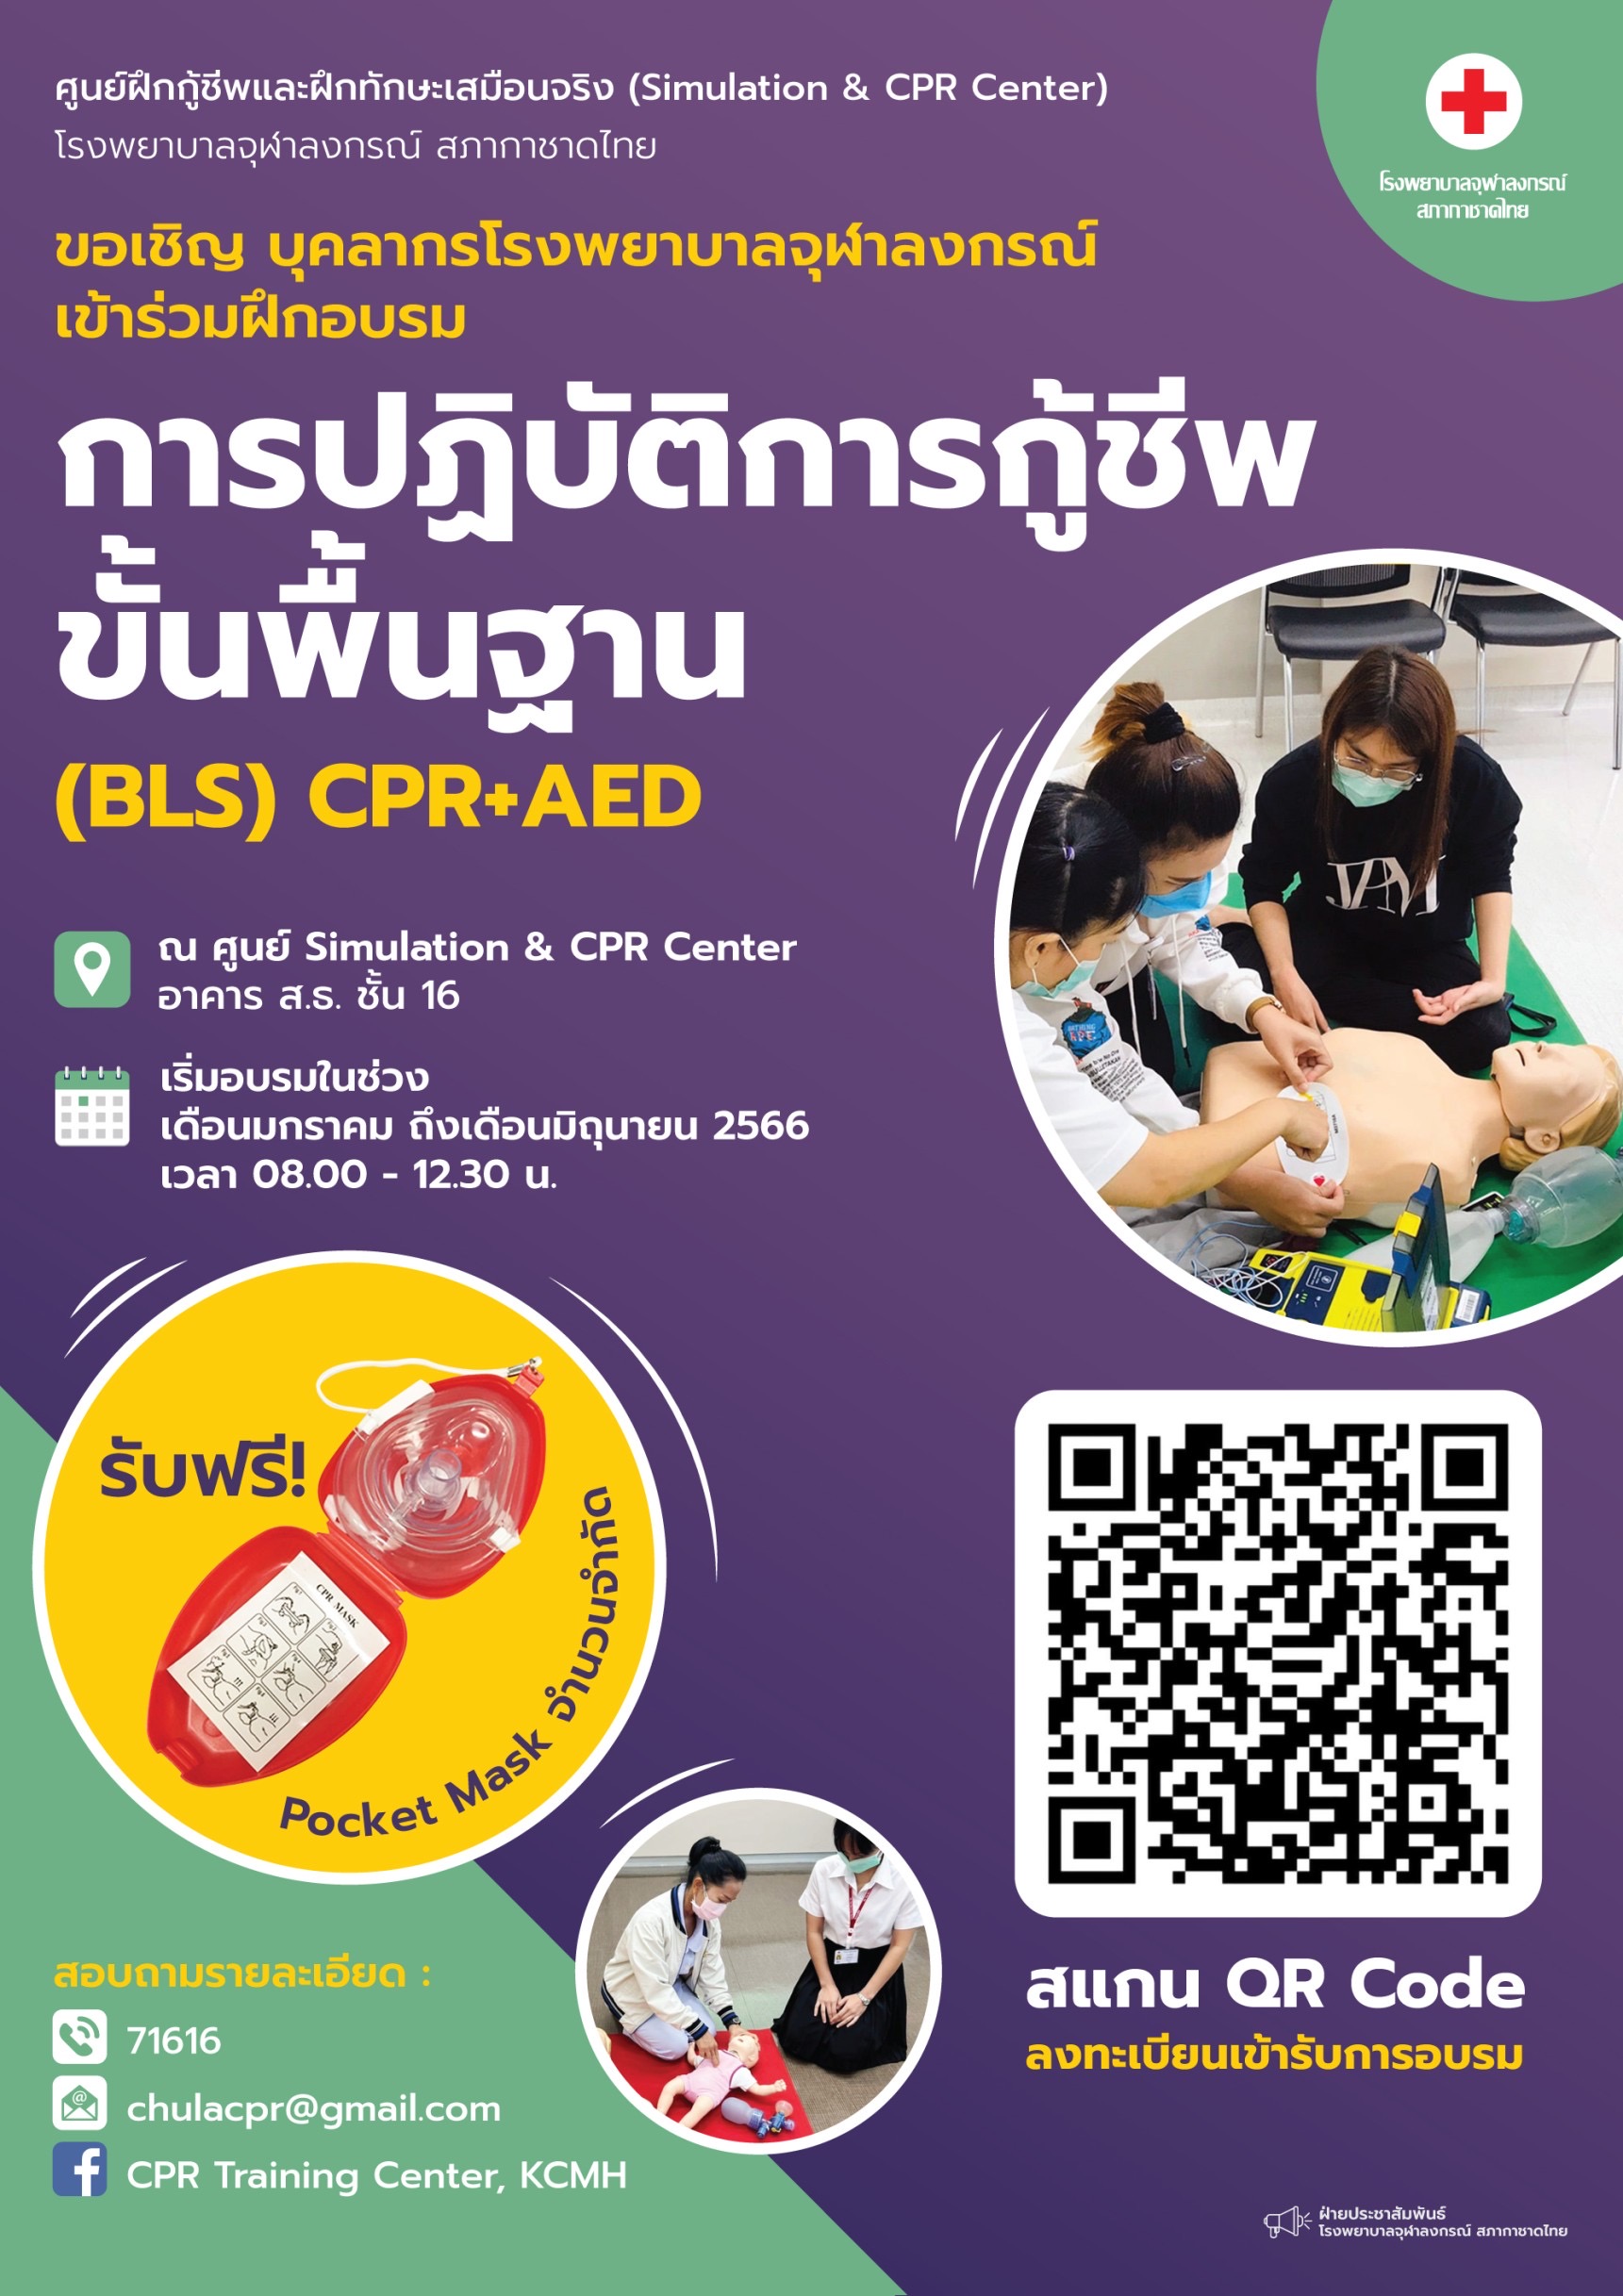 การปฏิบัติการกู้ชีพขั้นพื้นฐาน (BLS) CPR+AED